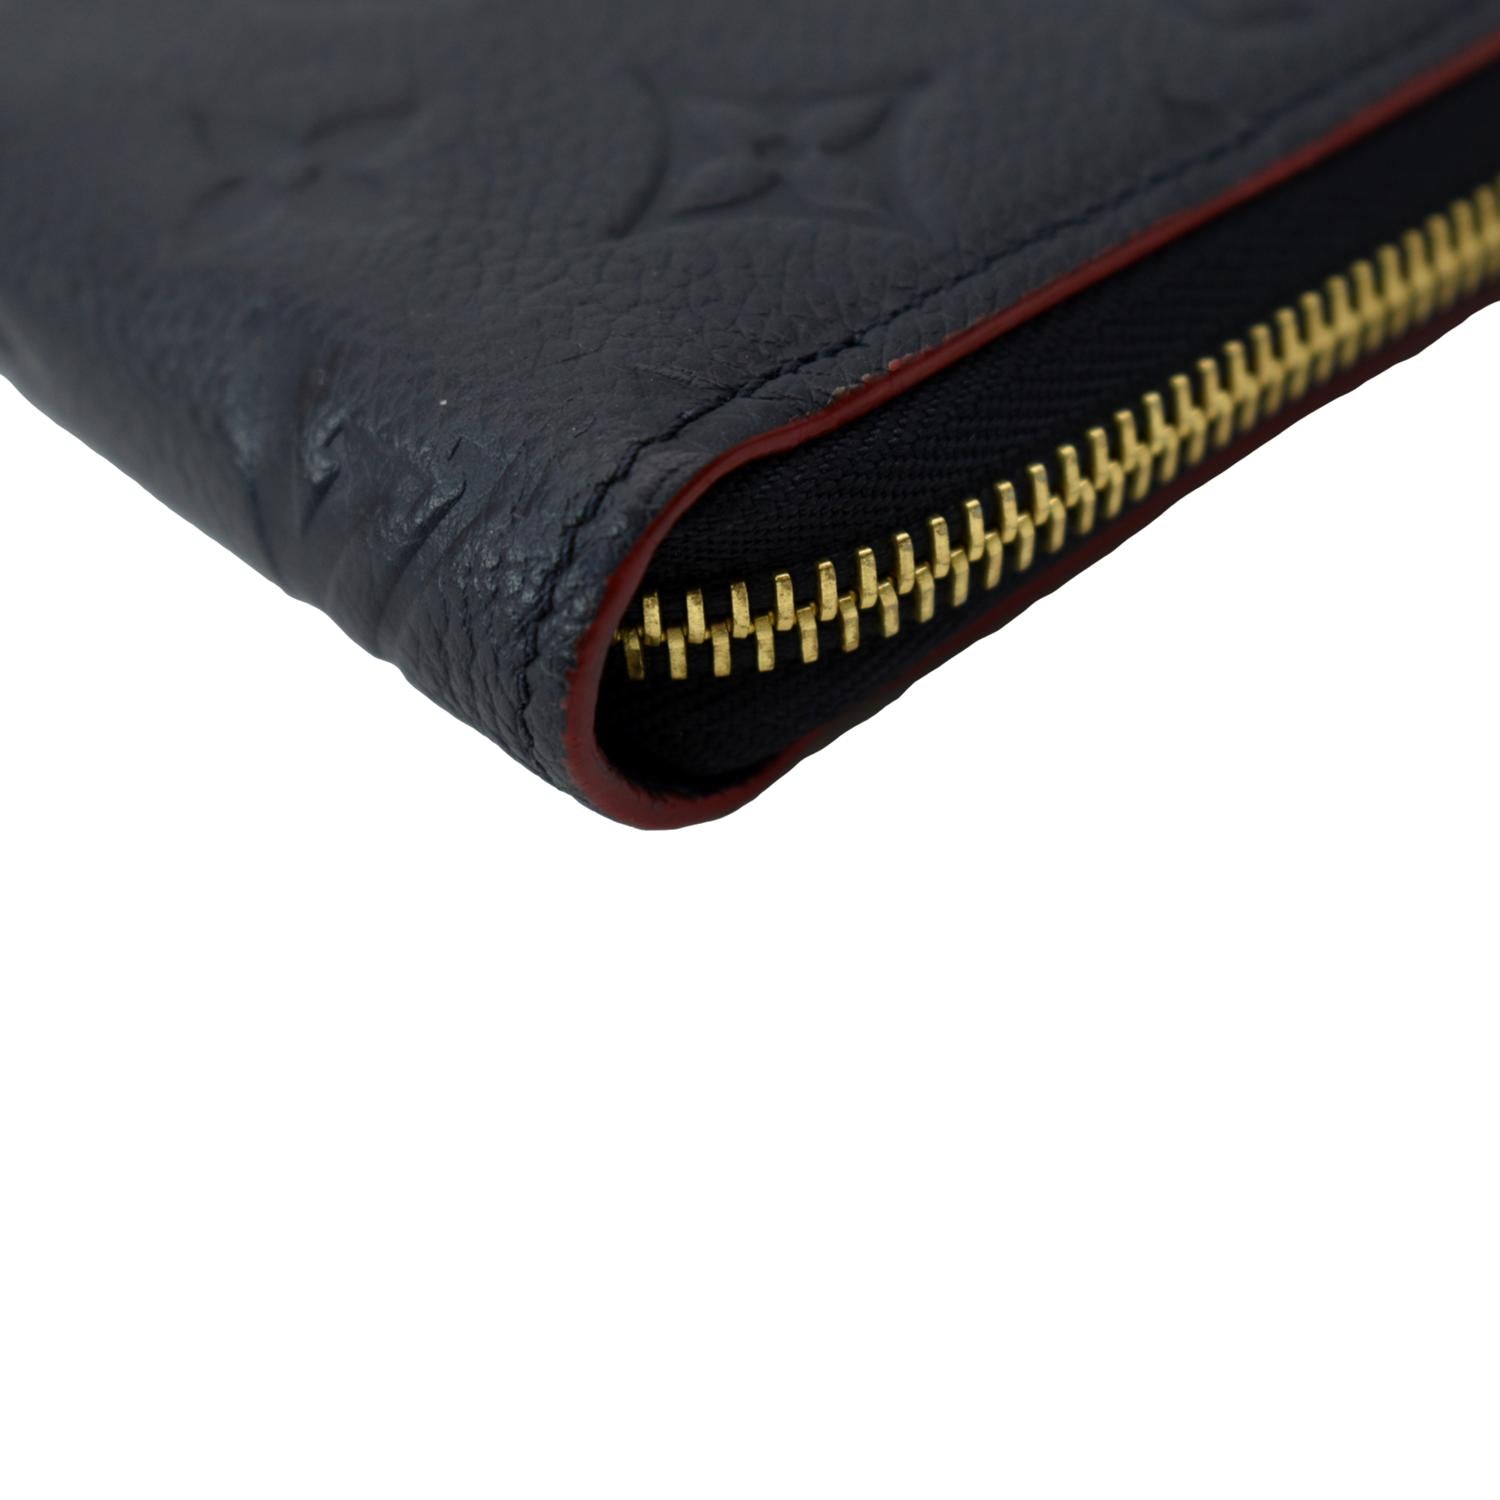 PRELOVED Louis Vuitton Zippy Wallet Dark Blue Monogram Empreinte Walle –  KimmieBBags LLC